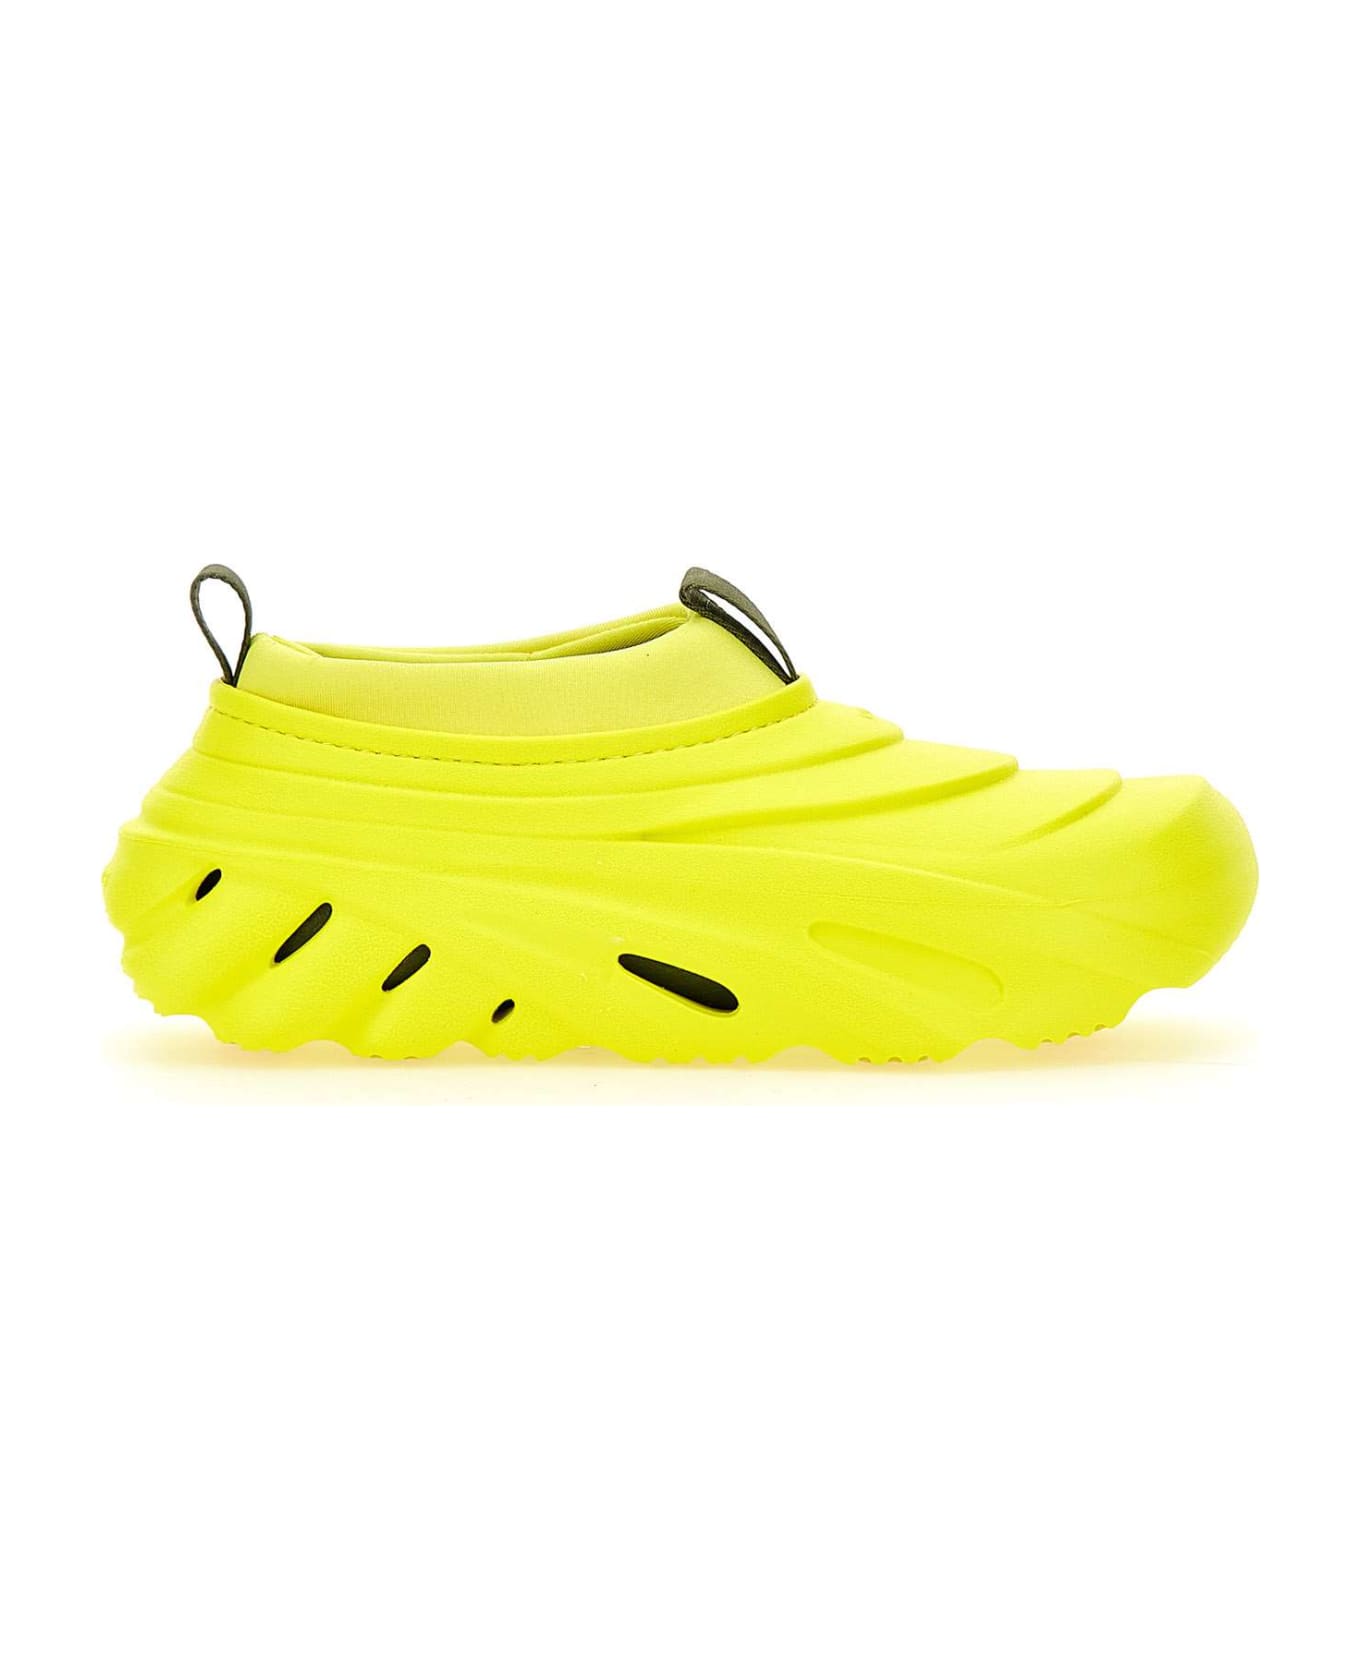 Crocs "echo Storm" Sneakers - YELLOW